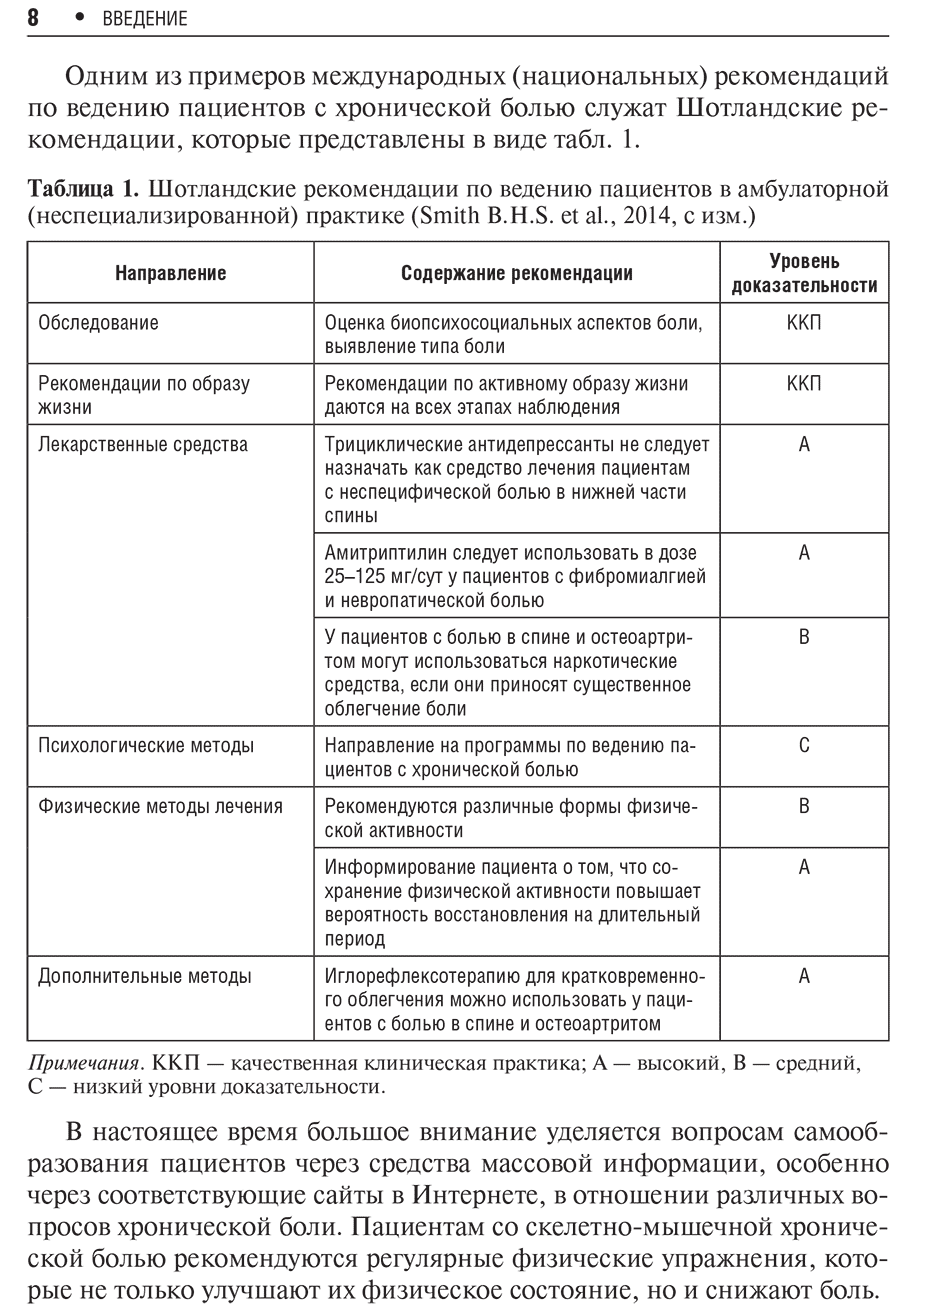 Таблица 1. Шотландские рекомендации по ведению пациентов в амбулаторной